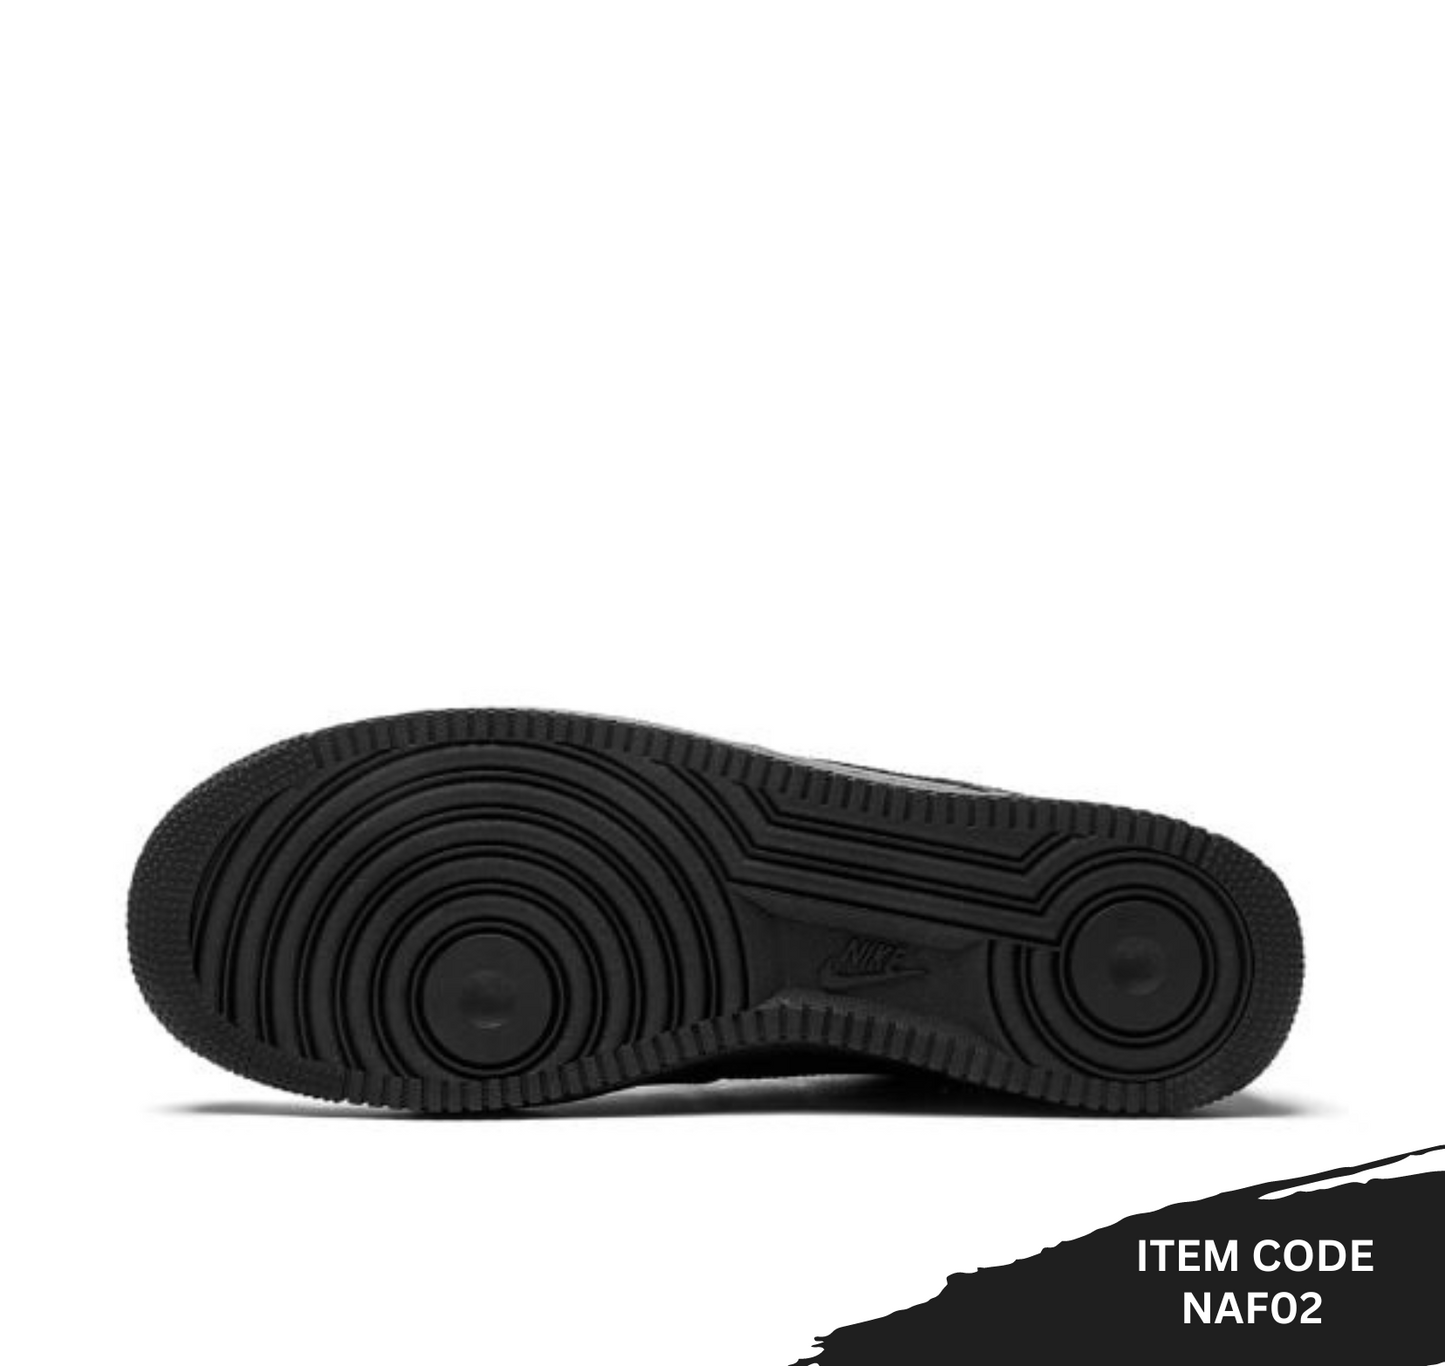 Nike - Air Force 1 Low "Triple Black" sneakers